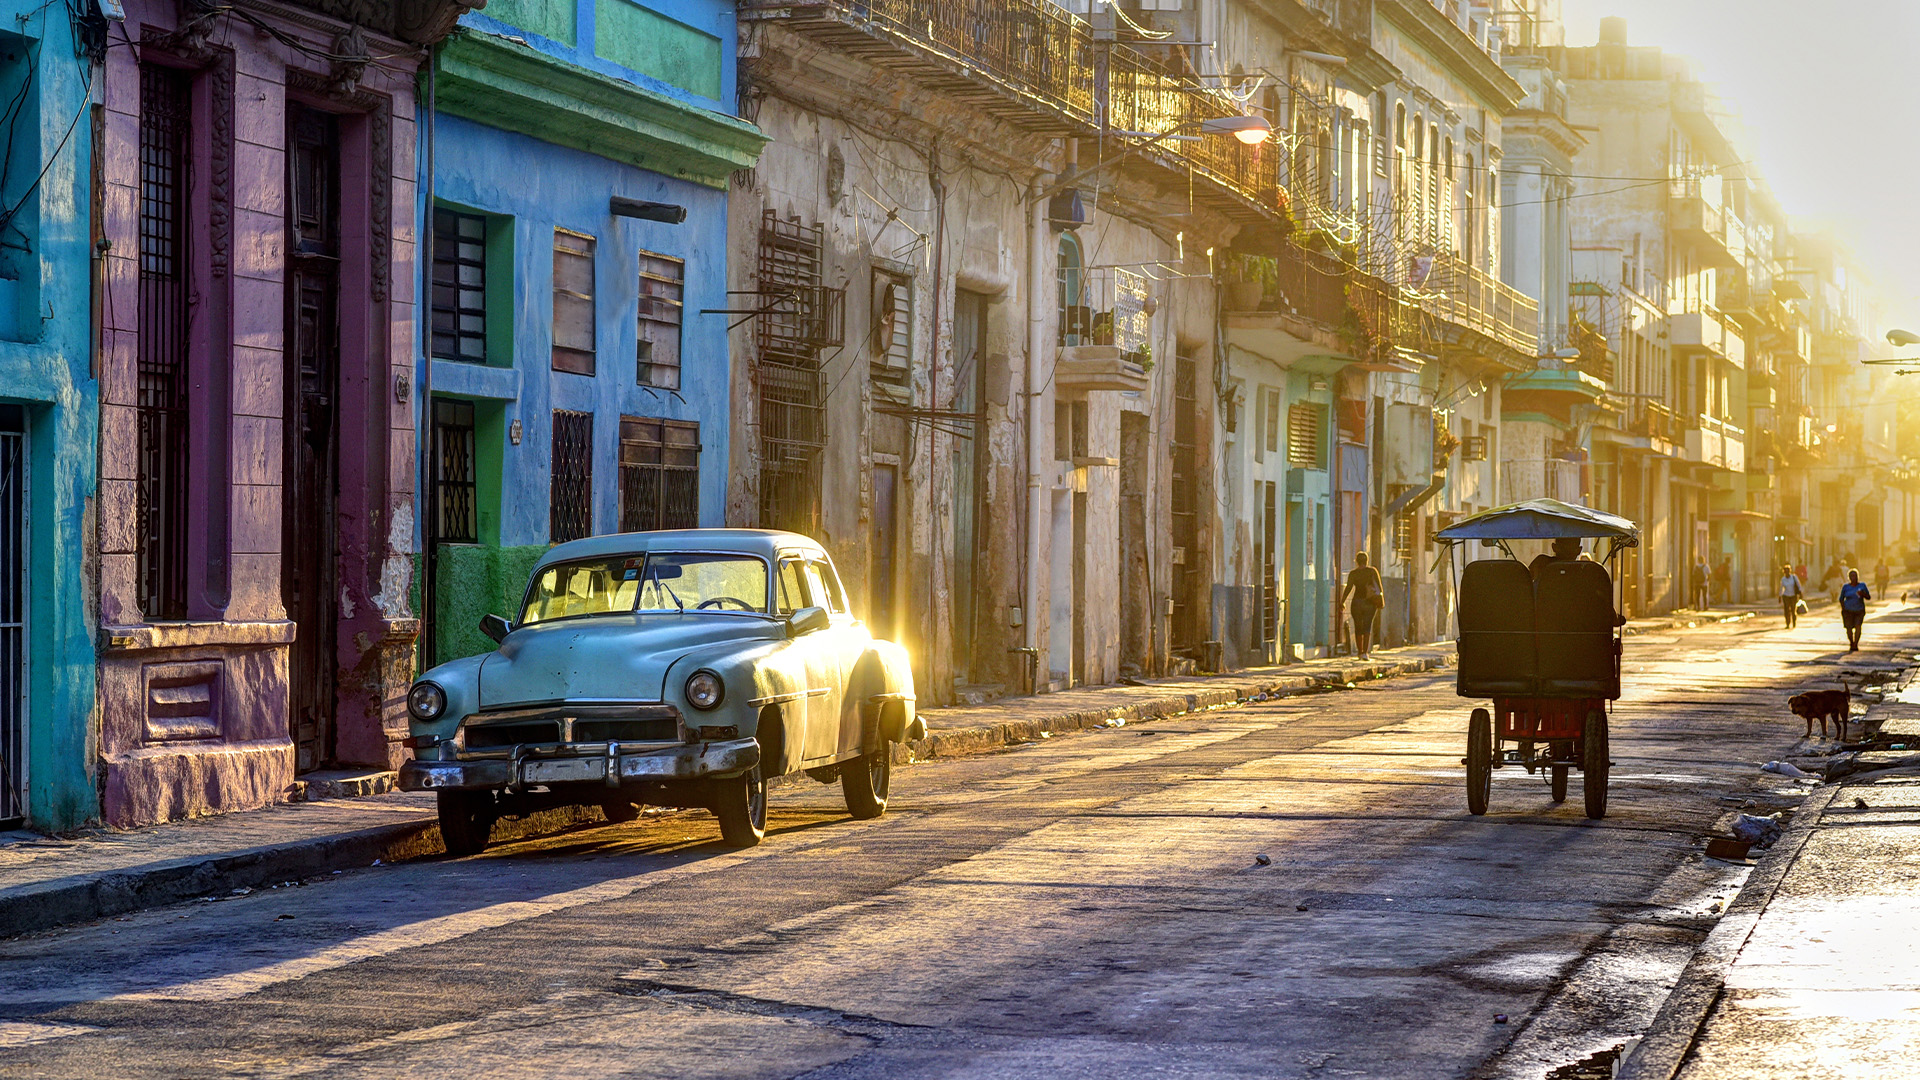 Street scene in Old Havana